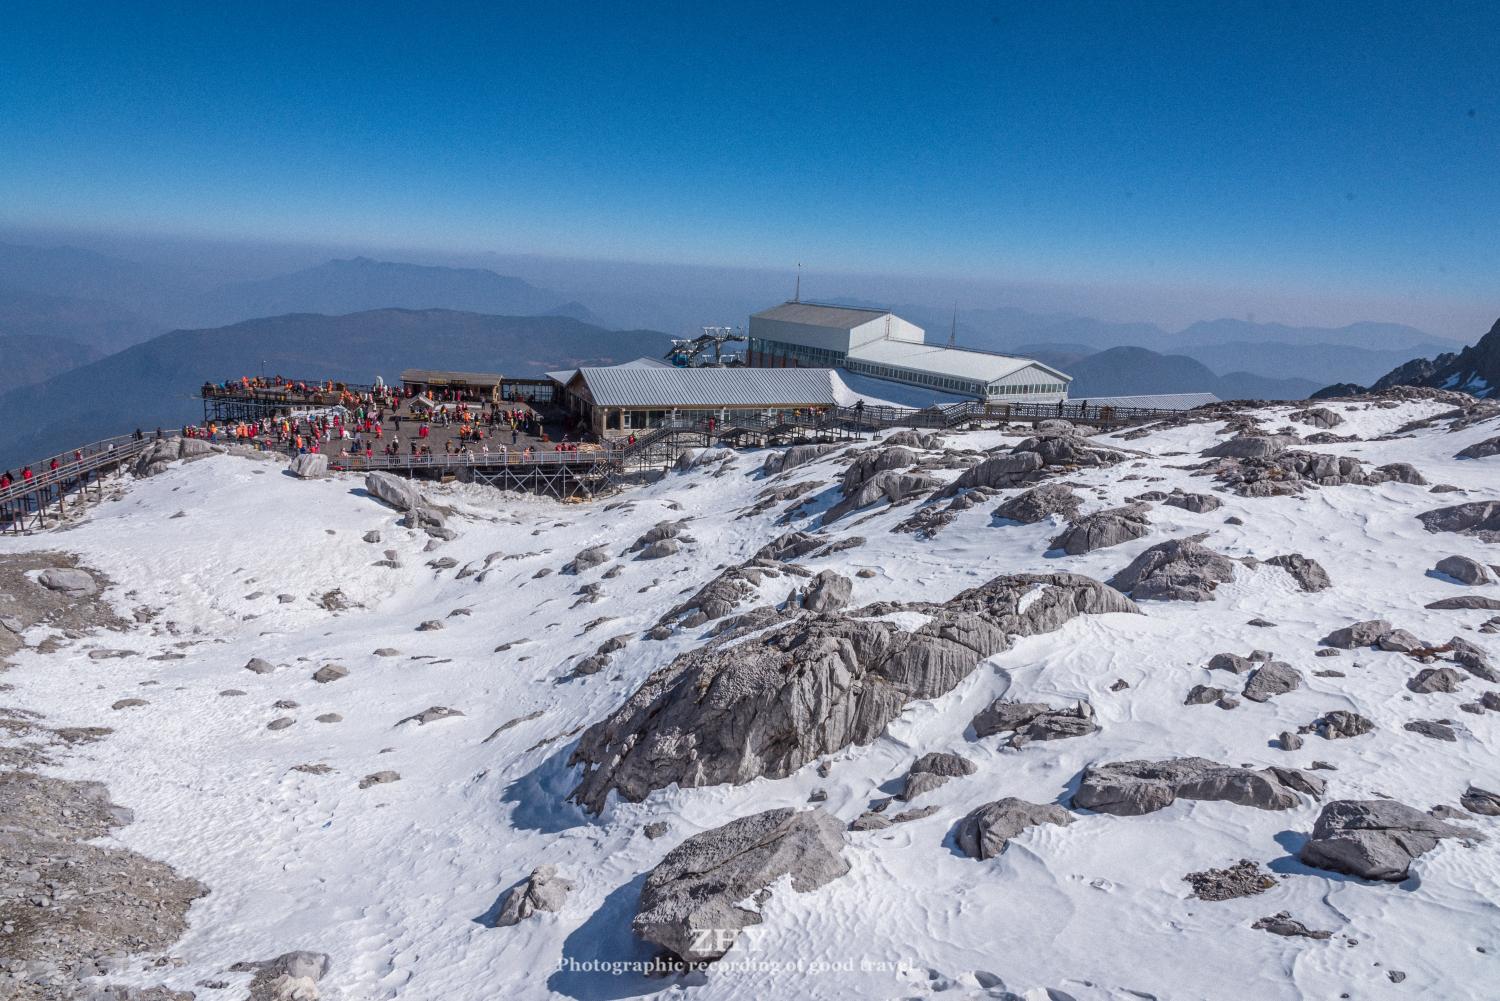 玉龙雪山,拥有国内海拔最高的索道,游客轻松登顶4605米高峰